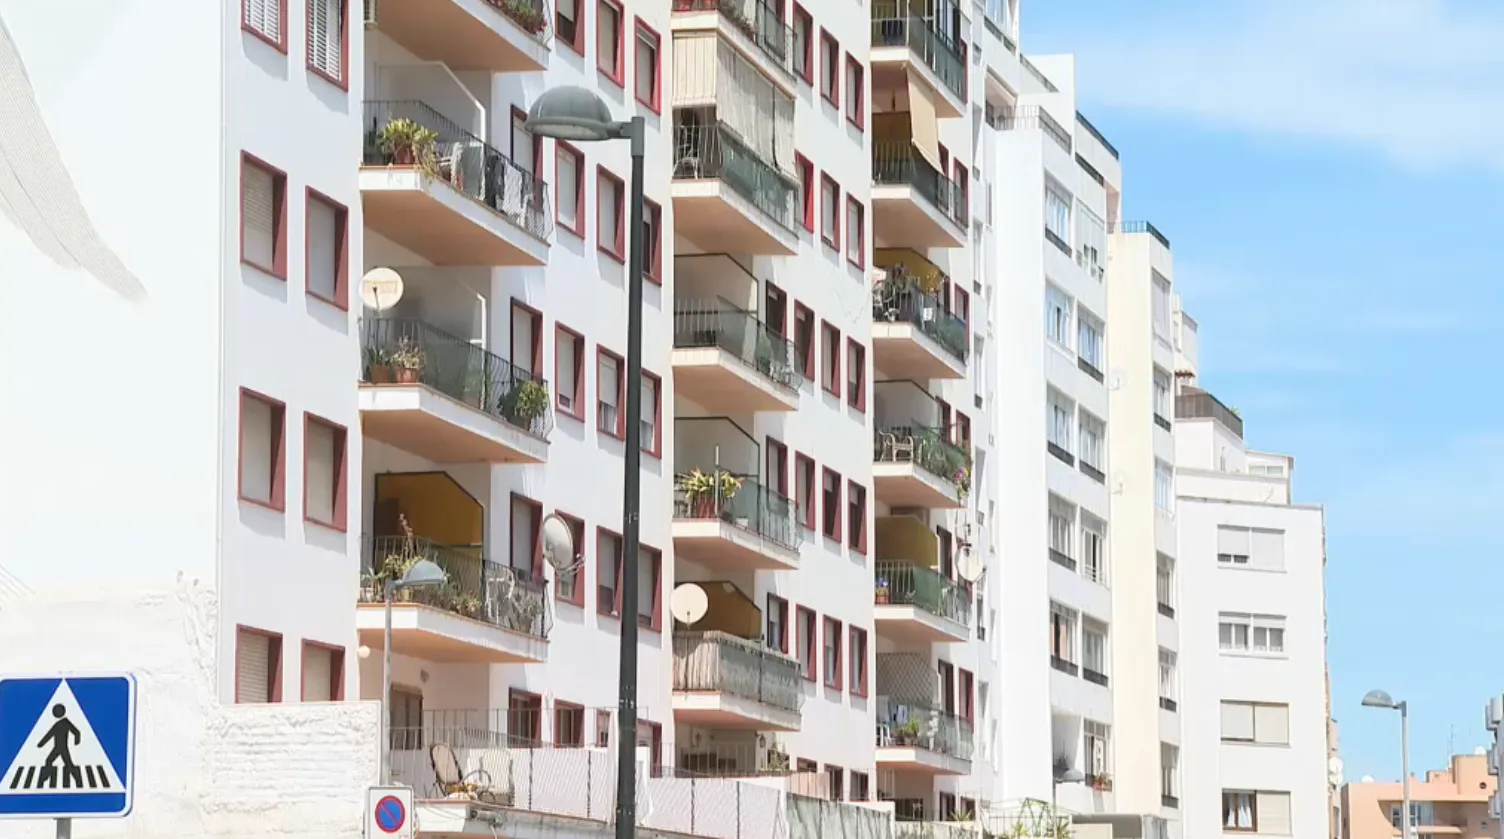 Constructors i APIS d’Eivissa veuen bones les mesures del Govern, però afirmen que no solucionaran el problema d’habitatge a curt termini